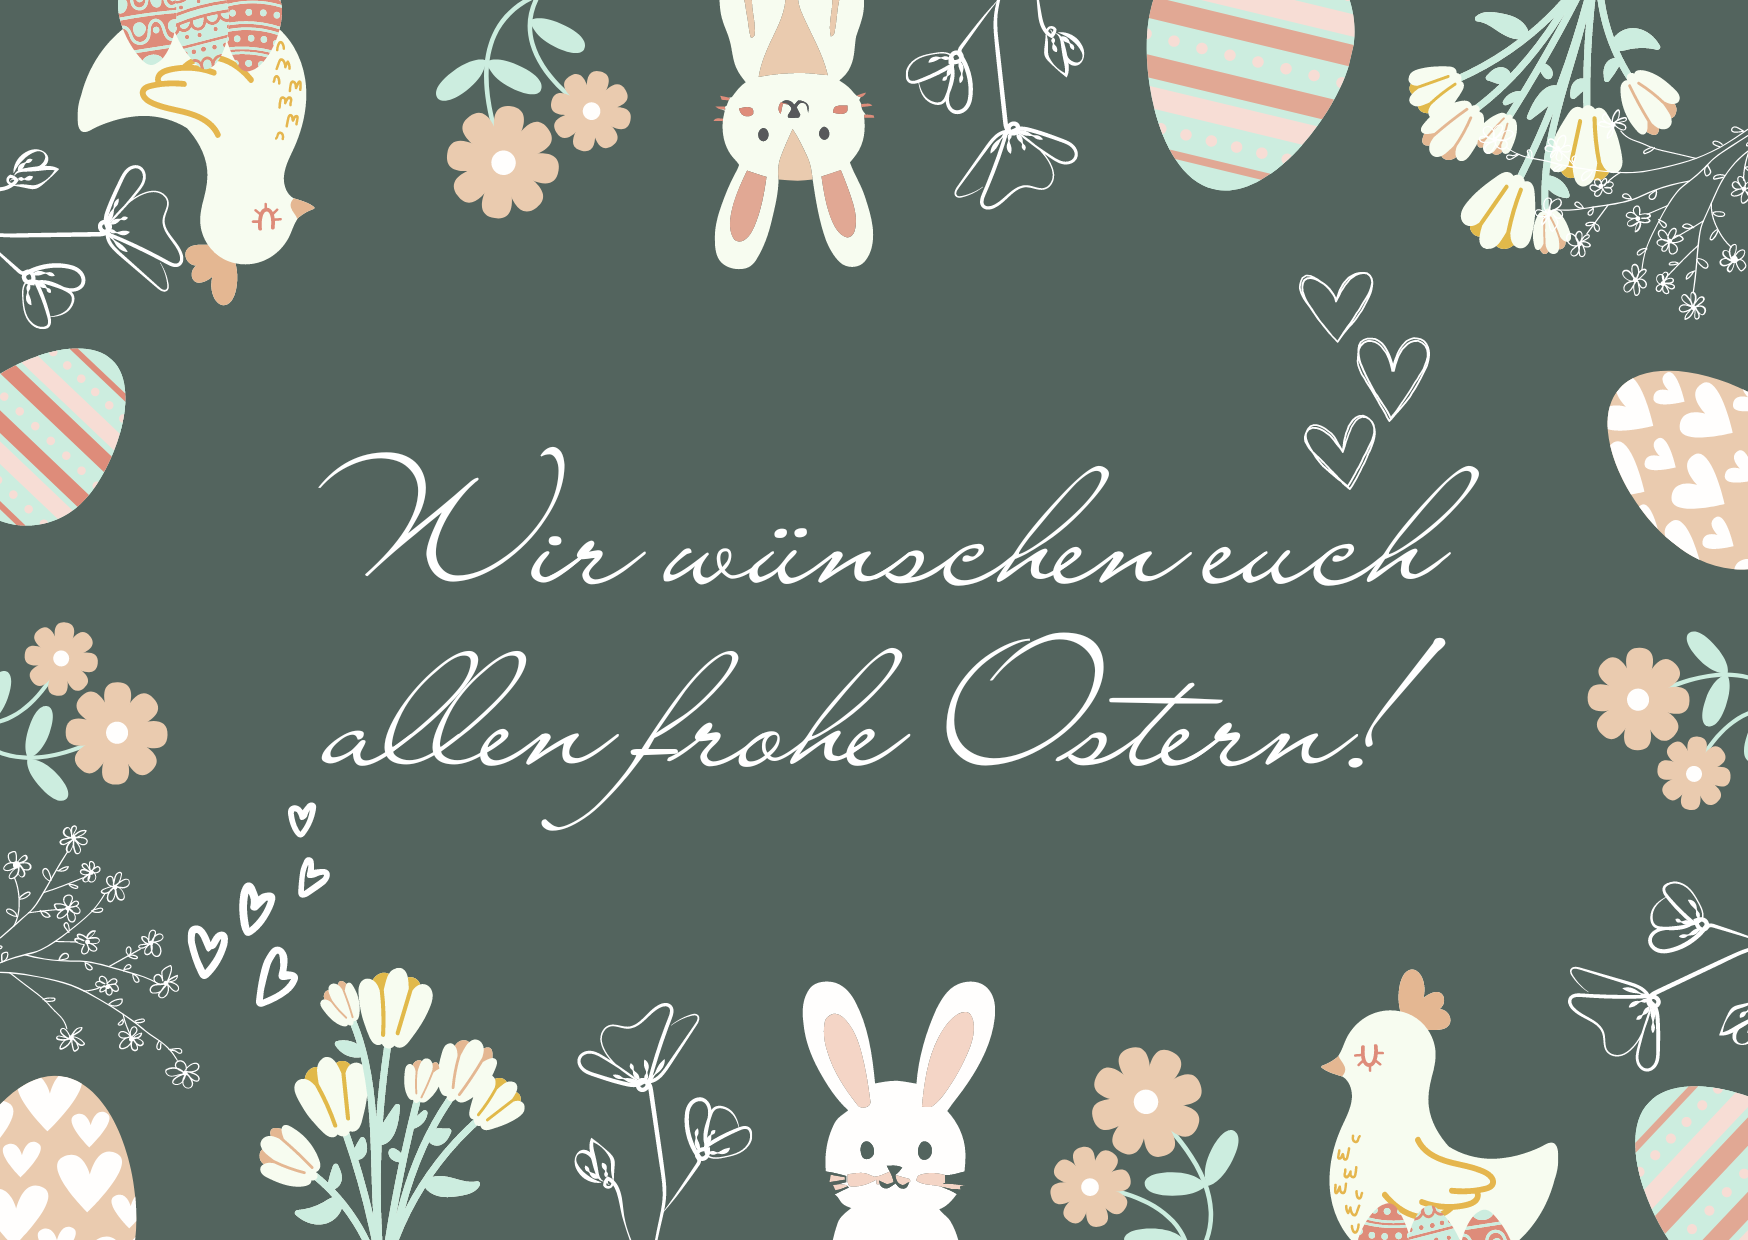 "Wir wünschen euch allen frohe Ostern"